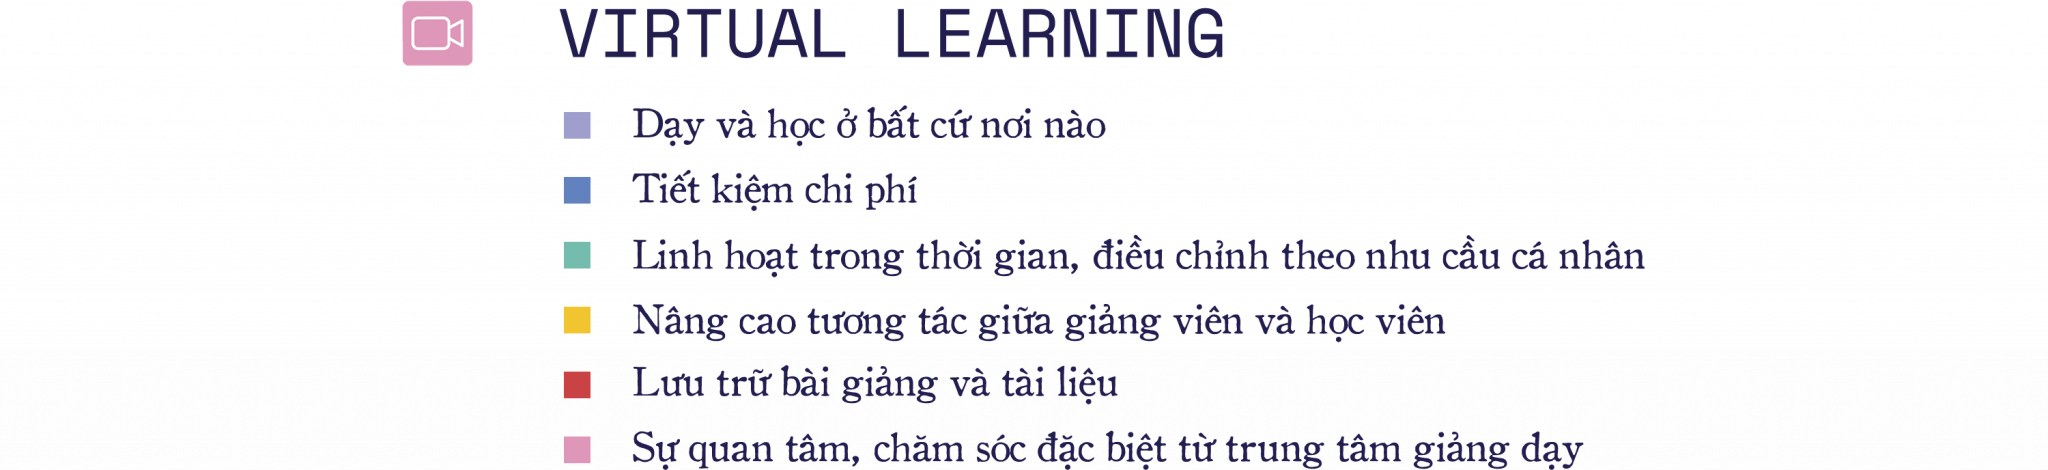 virtual-learning-xu-huong-hoc-tap-ben-vung-cua-thoi-dai-moi